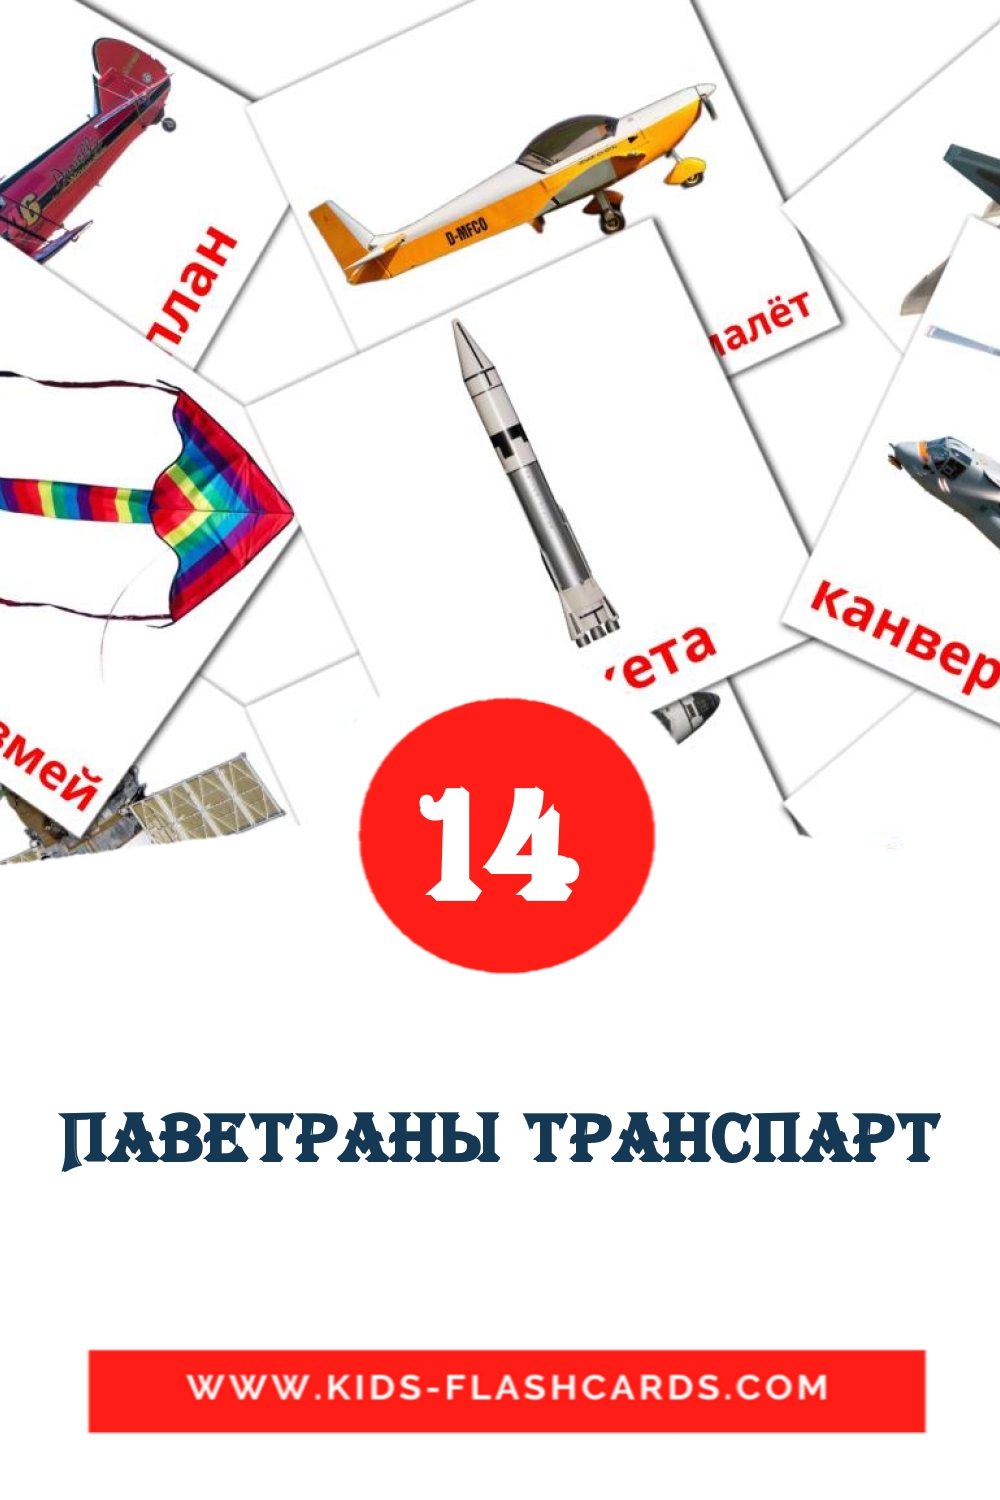 14 Паветраны транспарт fotokaarten voor kleuters in het wit-russisch